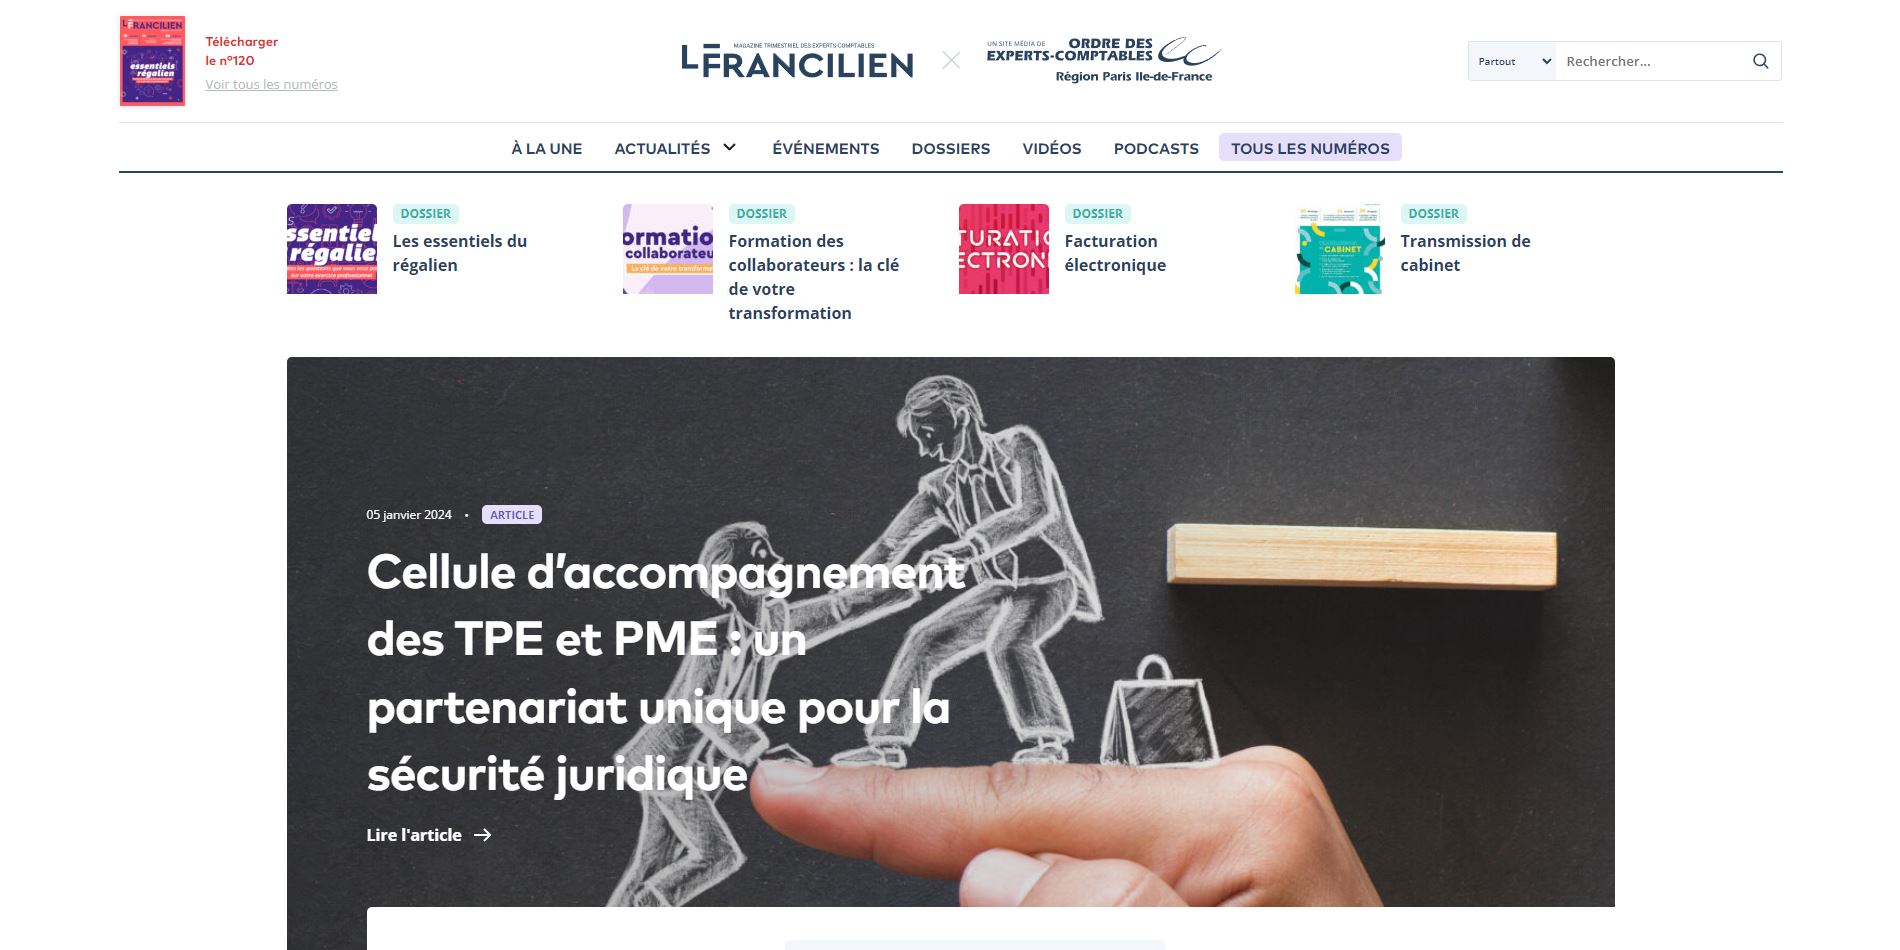 Le Francilien - magazine en ligne de l'Ordre des experts-comptables Paris IDF